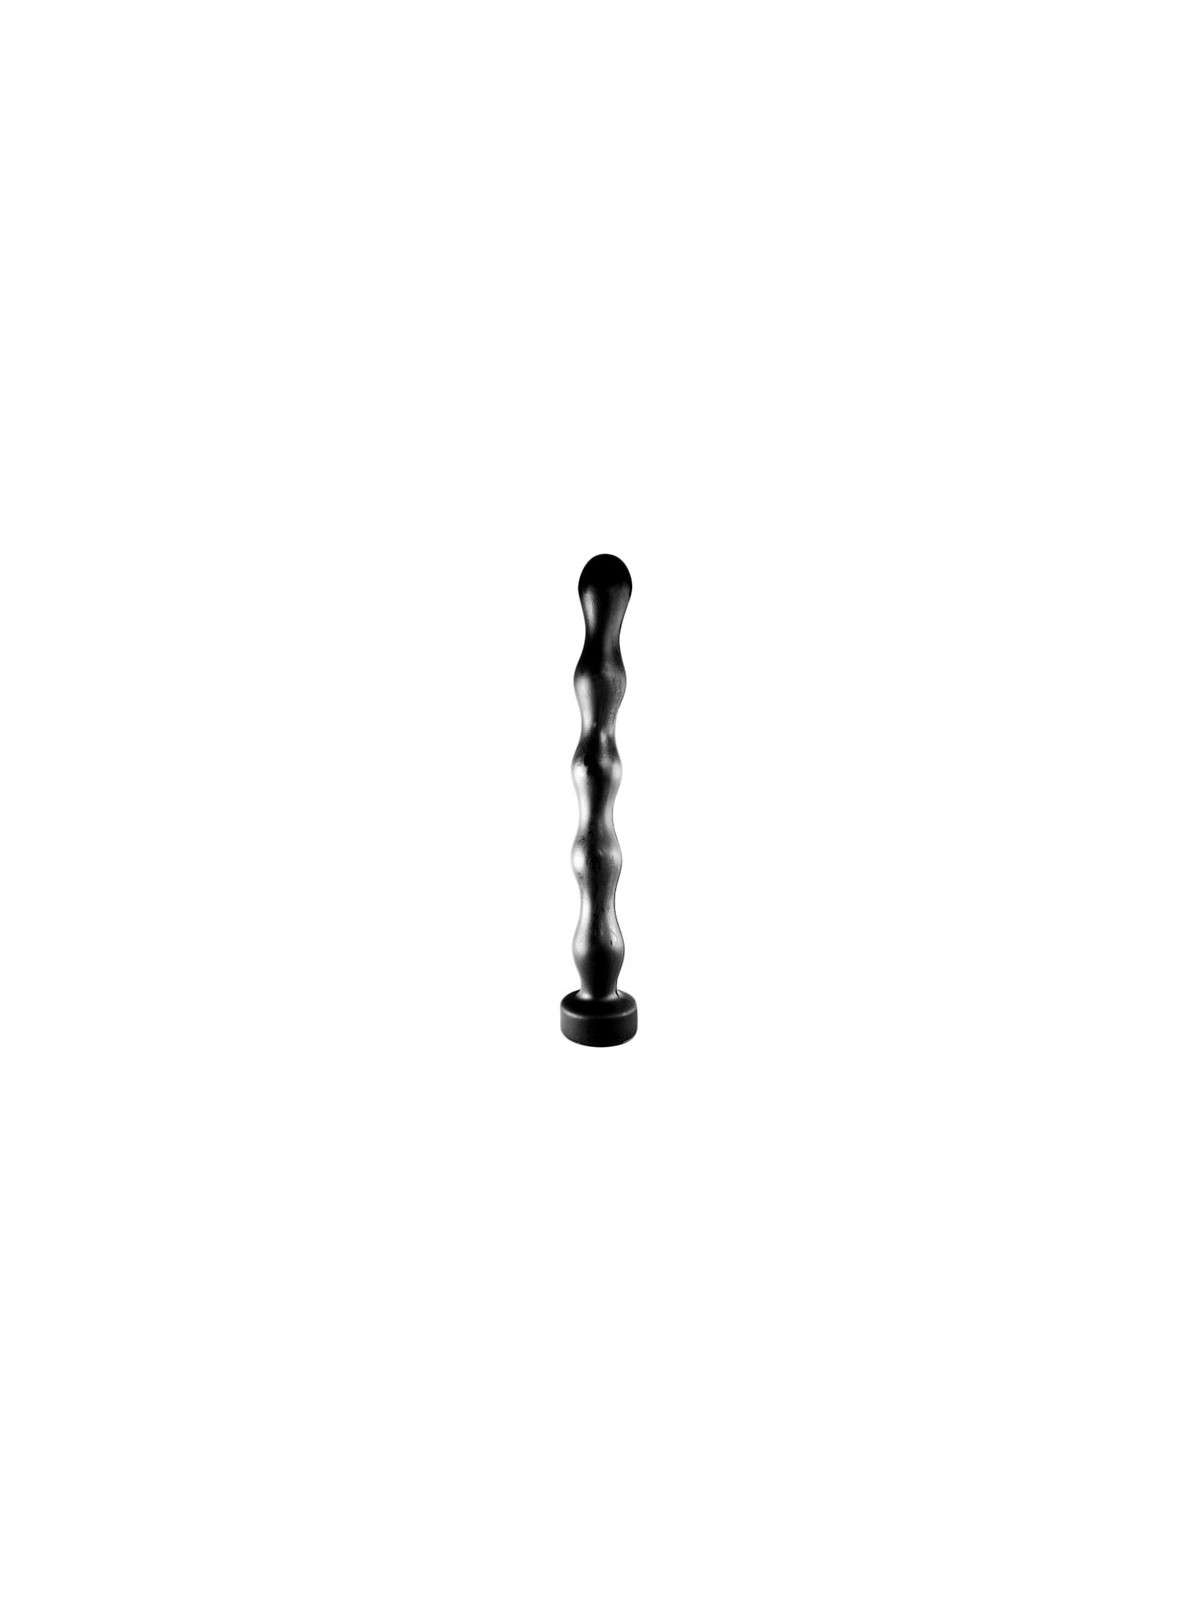 imports Plug long All Black 29 x 3.5 cm Noir Ce plug long de la marque All Black et un sextoy de 29cm insérable à la forme origi